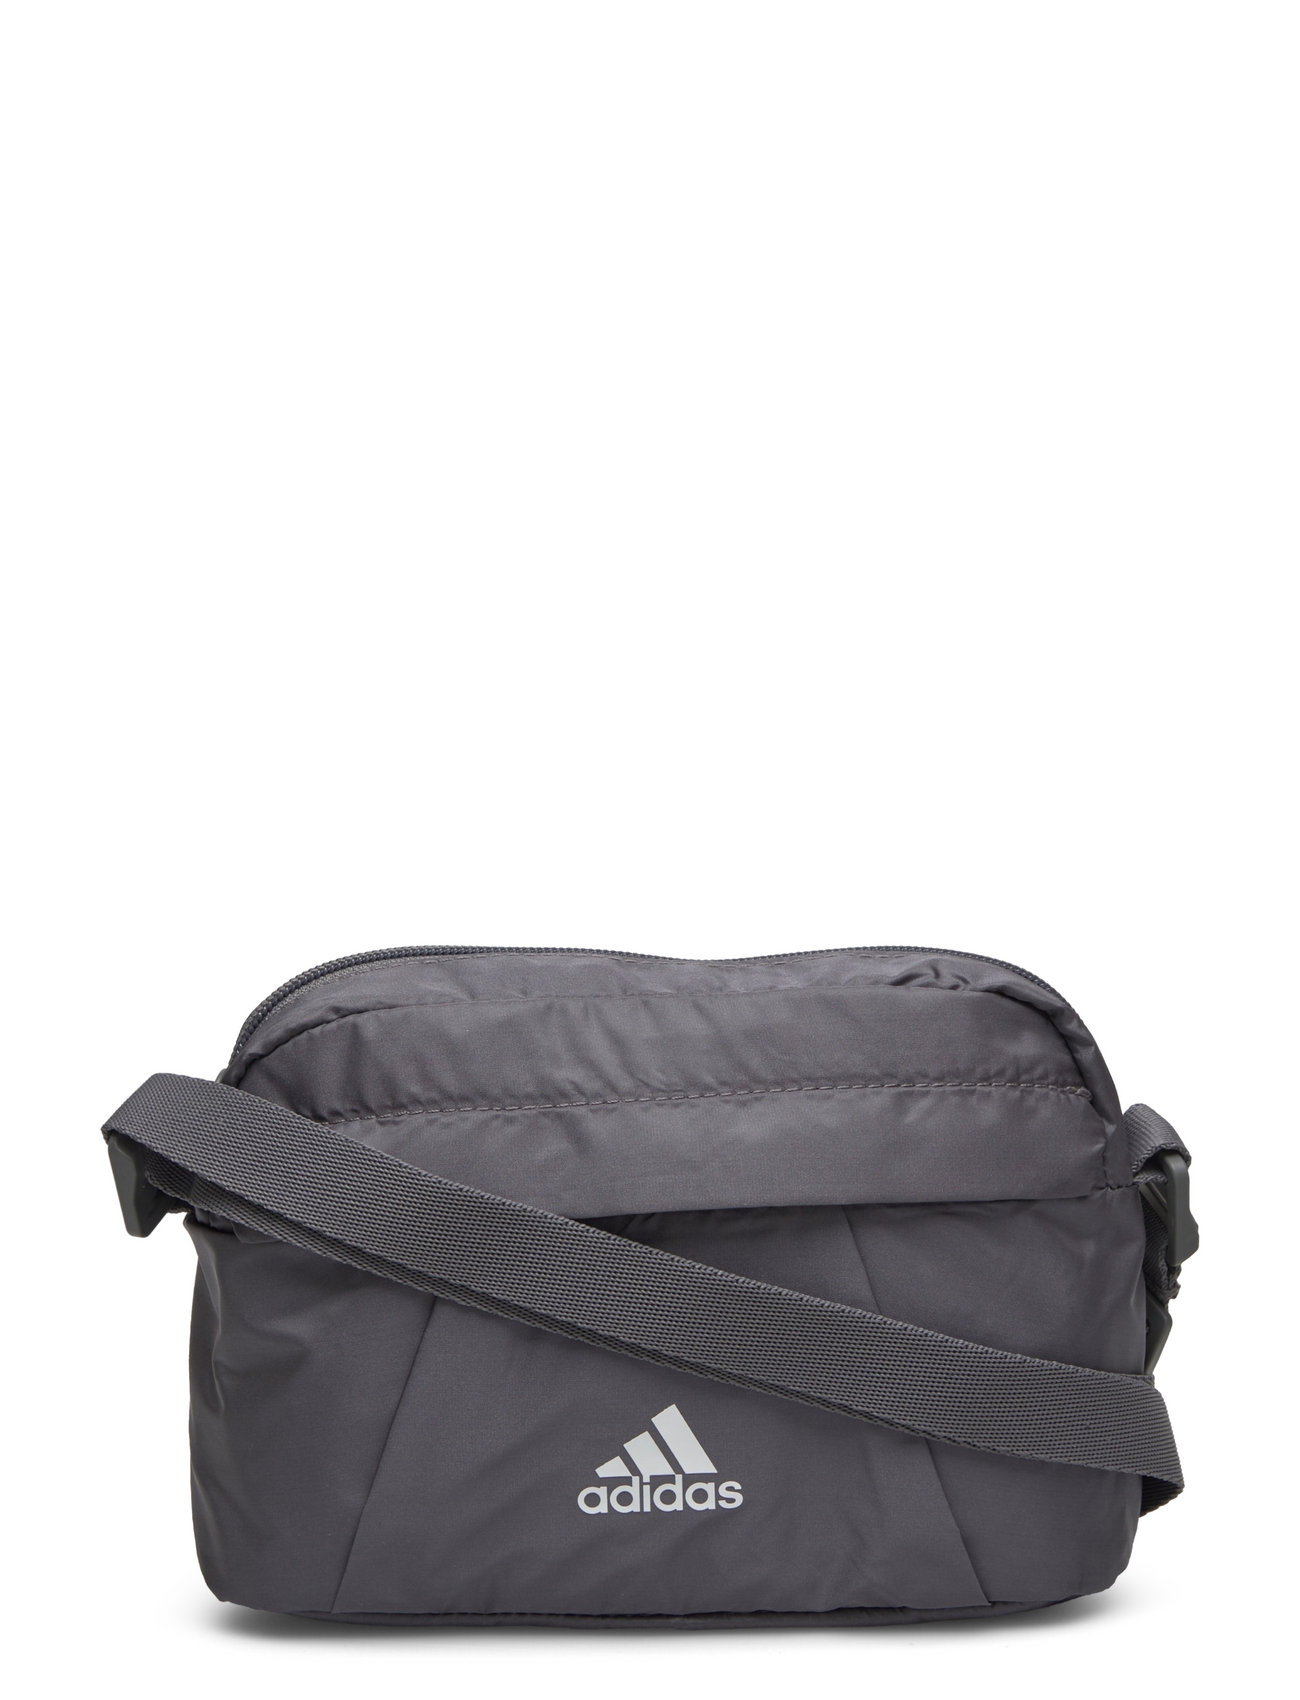 adidas Performance Adidas Gl Pouch - Crossbody Bags | Boozt.com